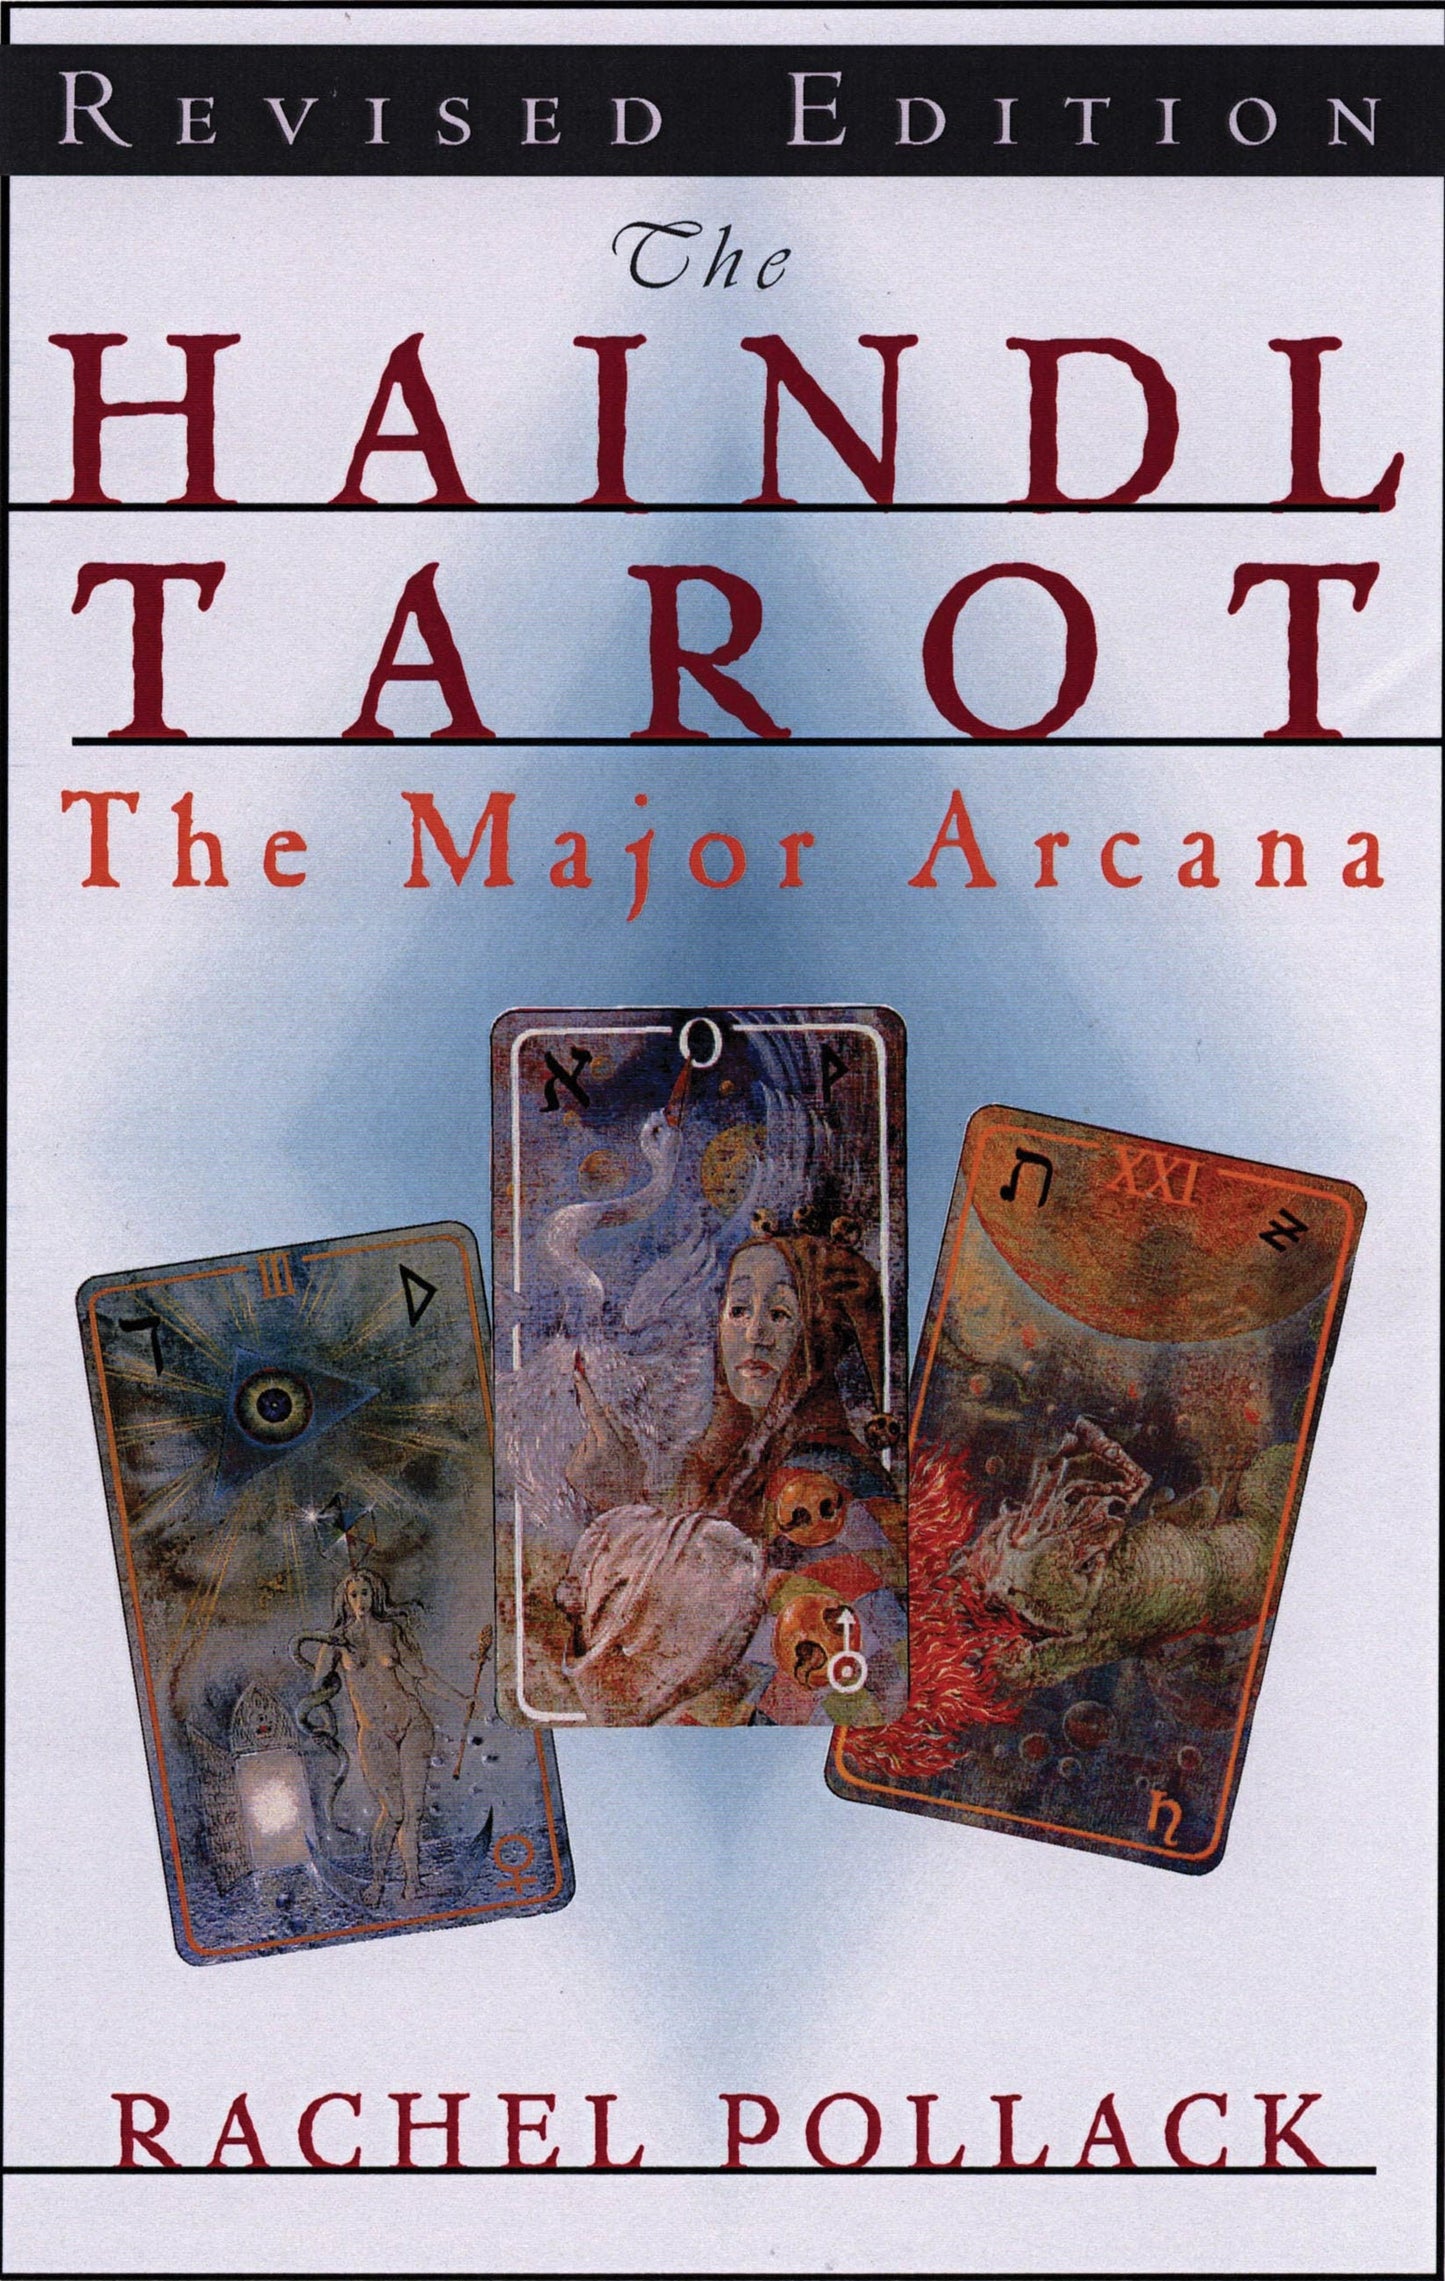 The Haindl Tarot, Major Arcana by Rachel Pollack